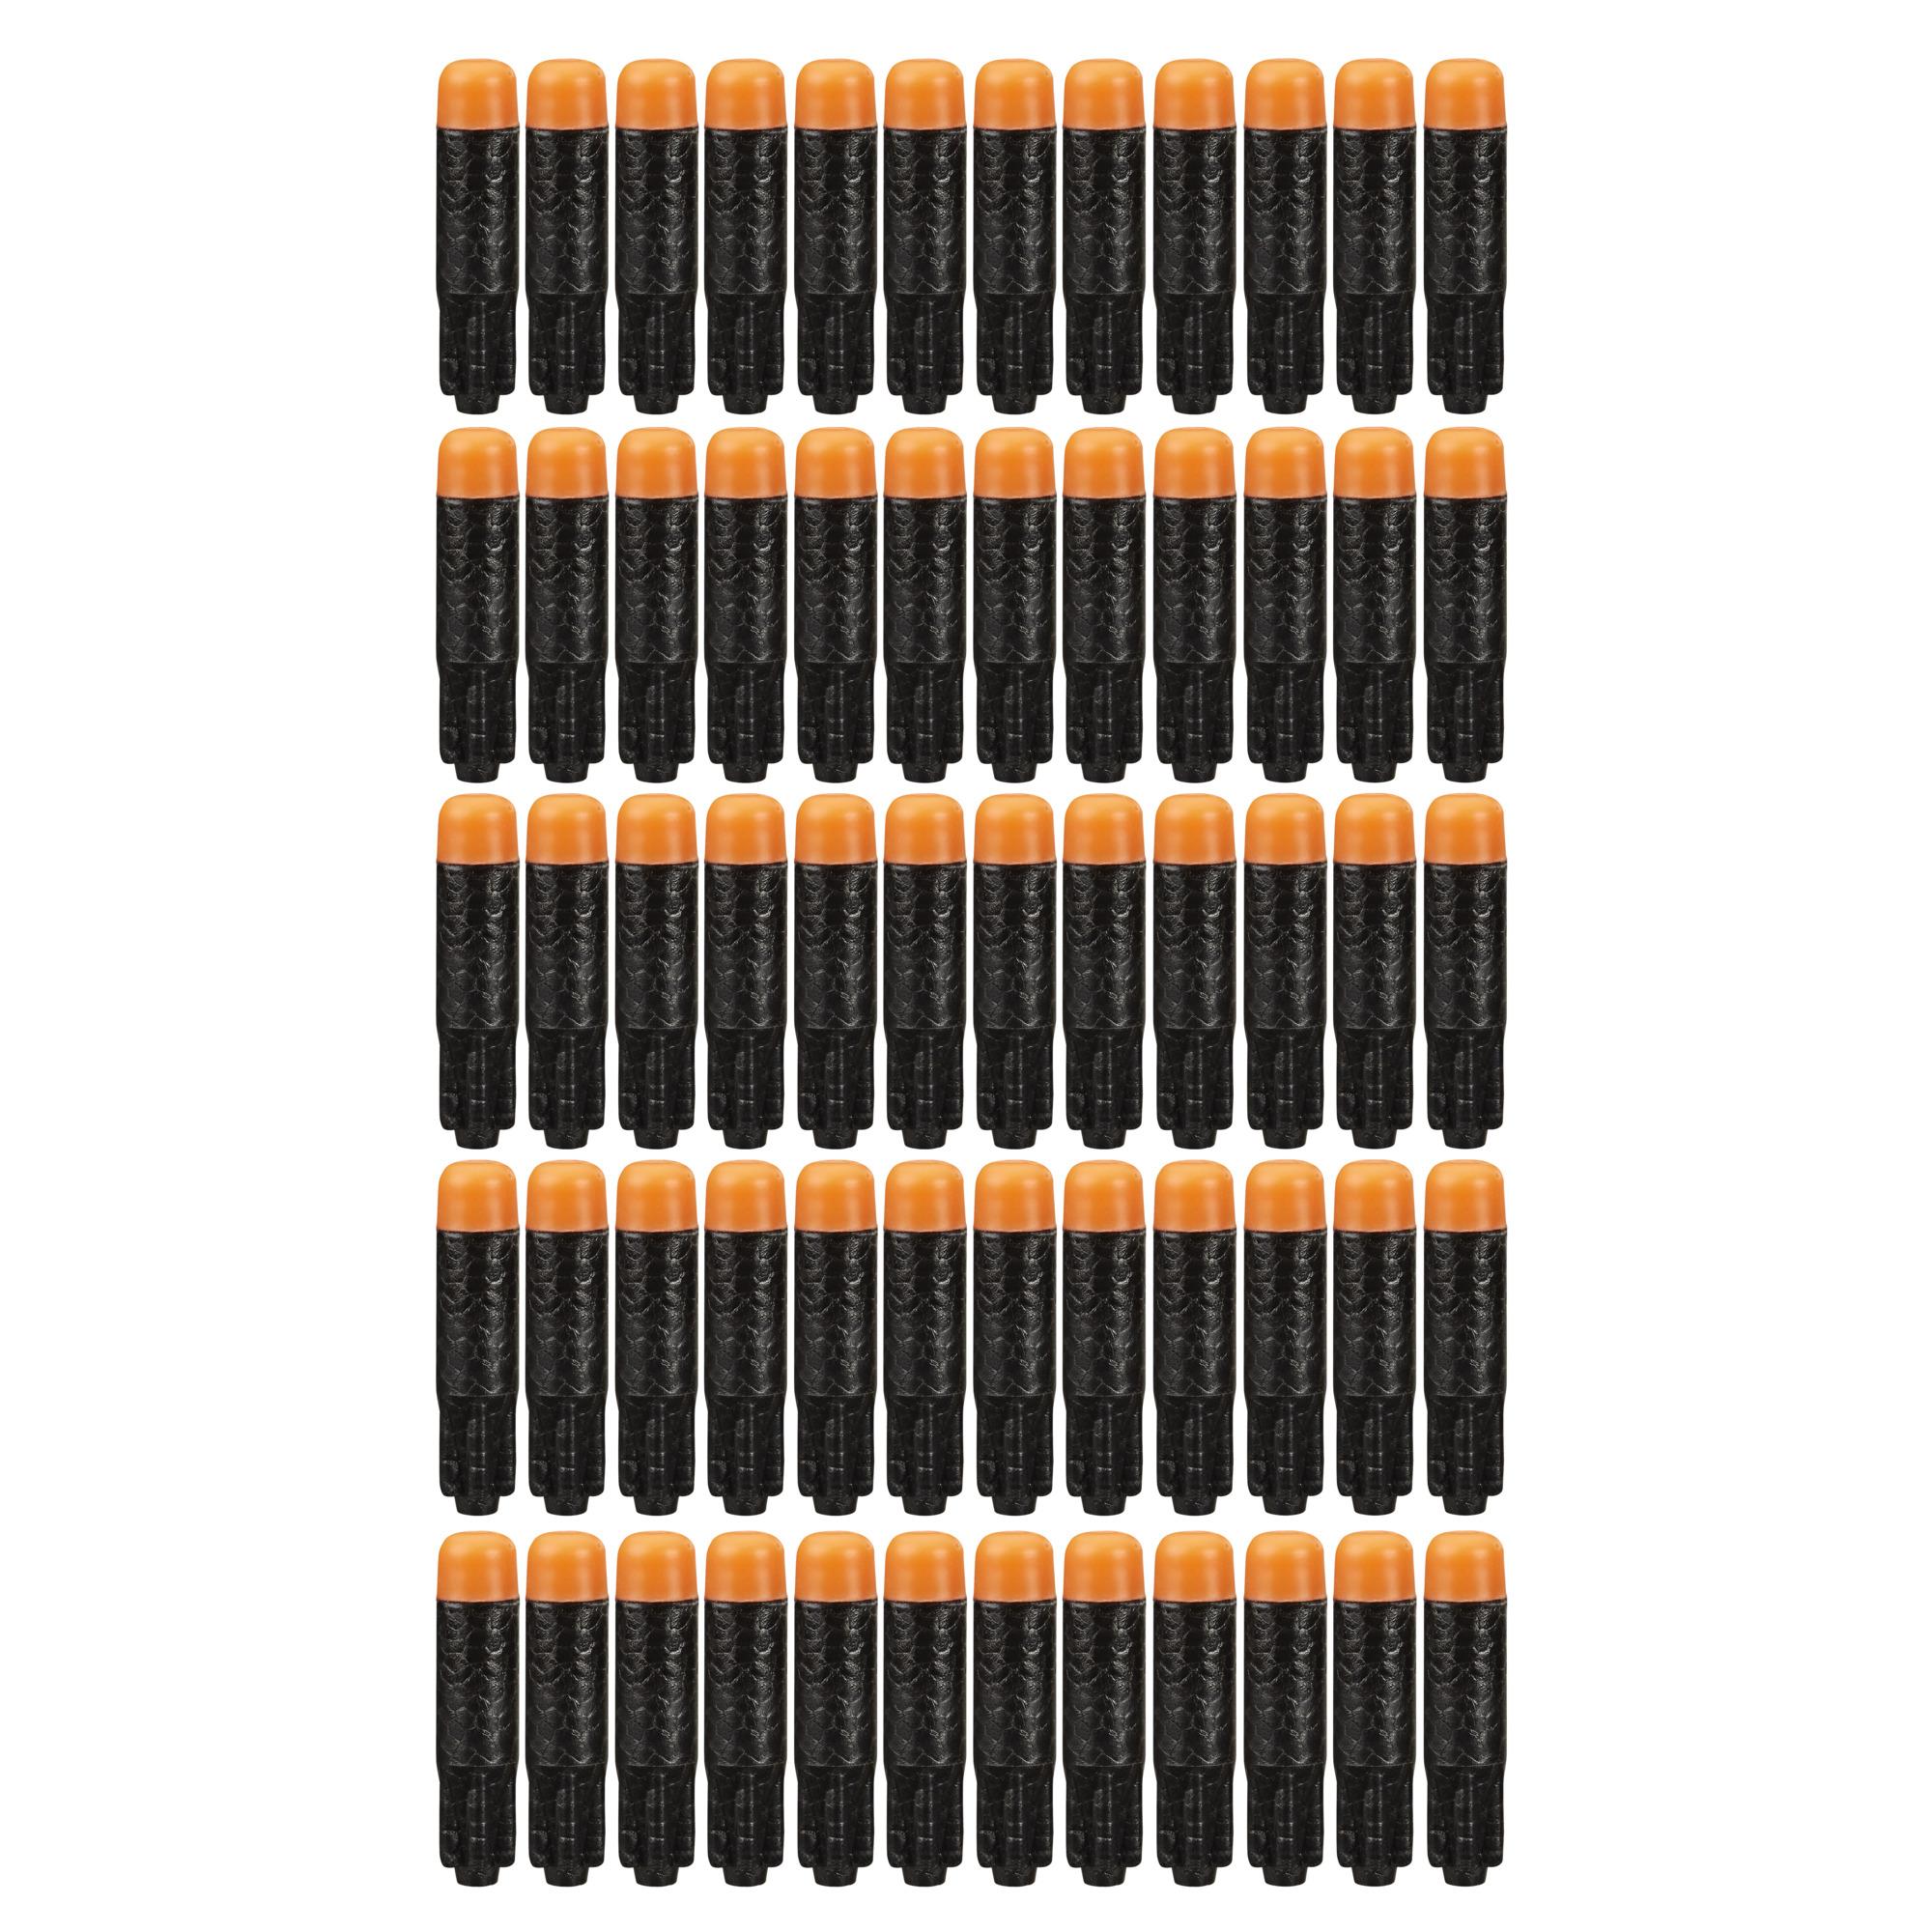 Nerf Ultra 60-Dart Nachfüllpack – der ultimative Nerf Dart Spaß – Nur mit Nerf Ultra Blastern kompatibel